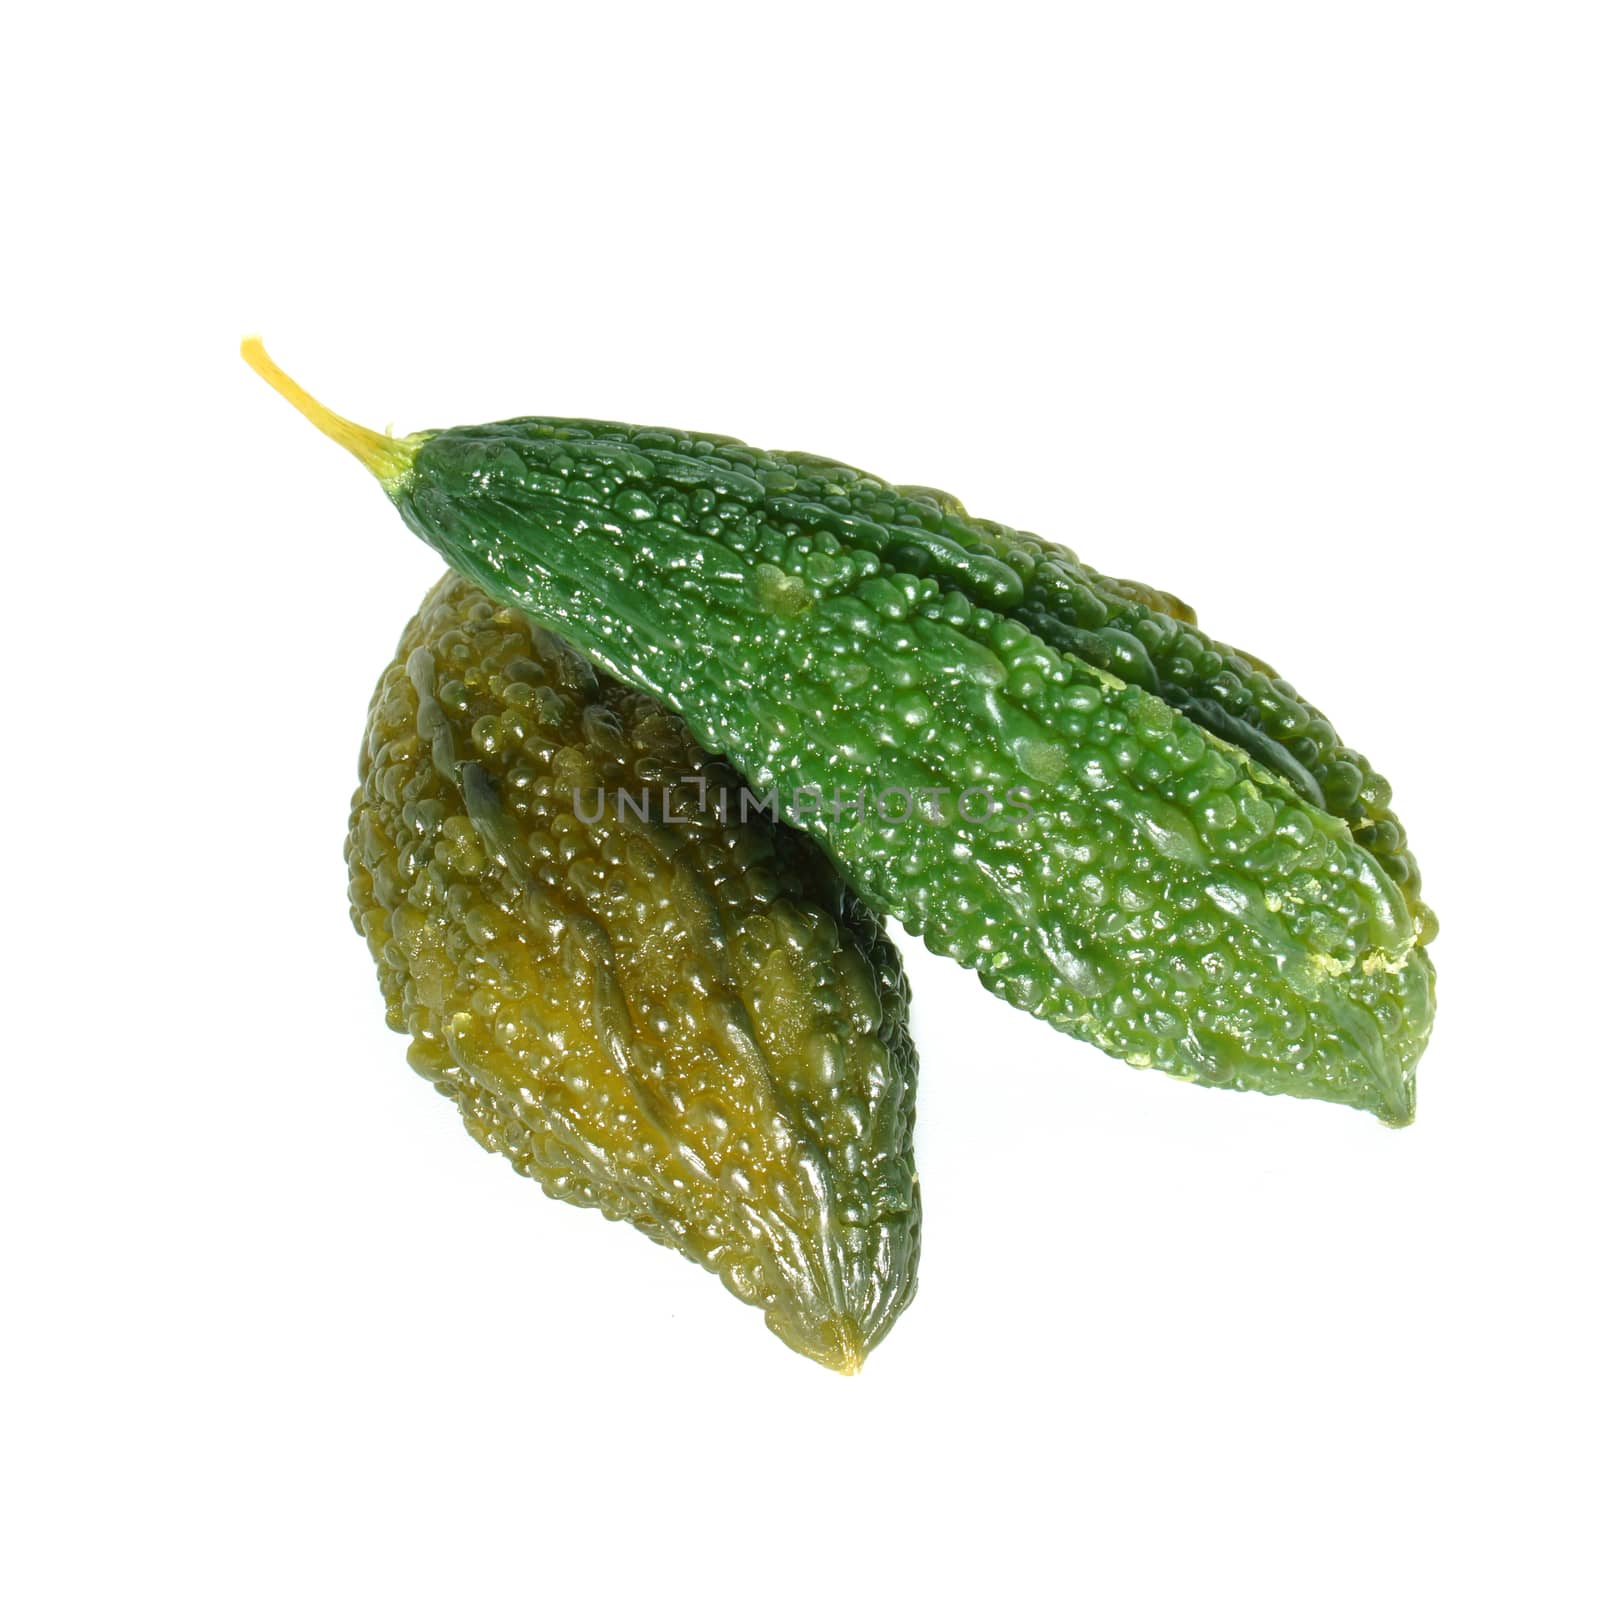 Bitter Cucumber preserved
(Momordica charantia L.)